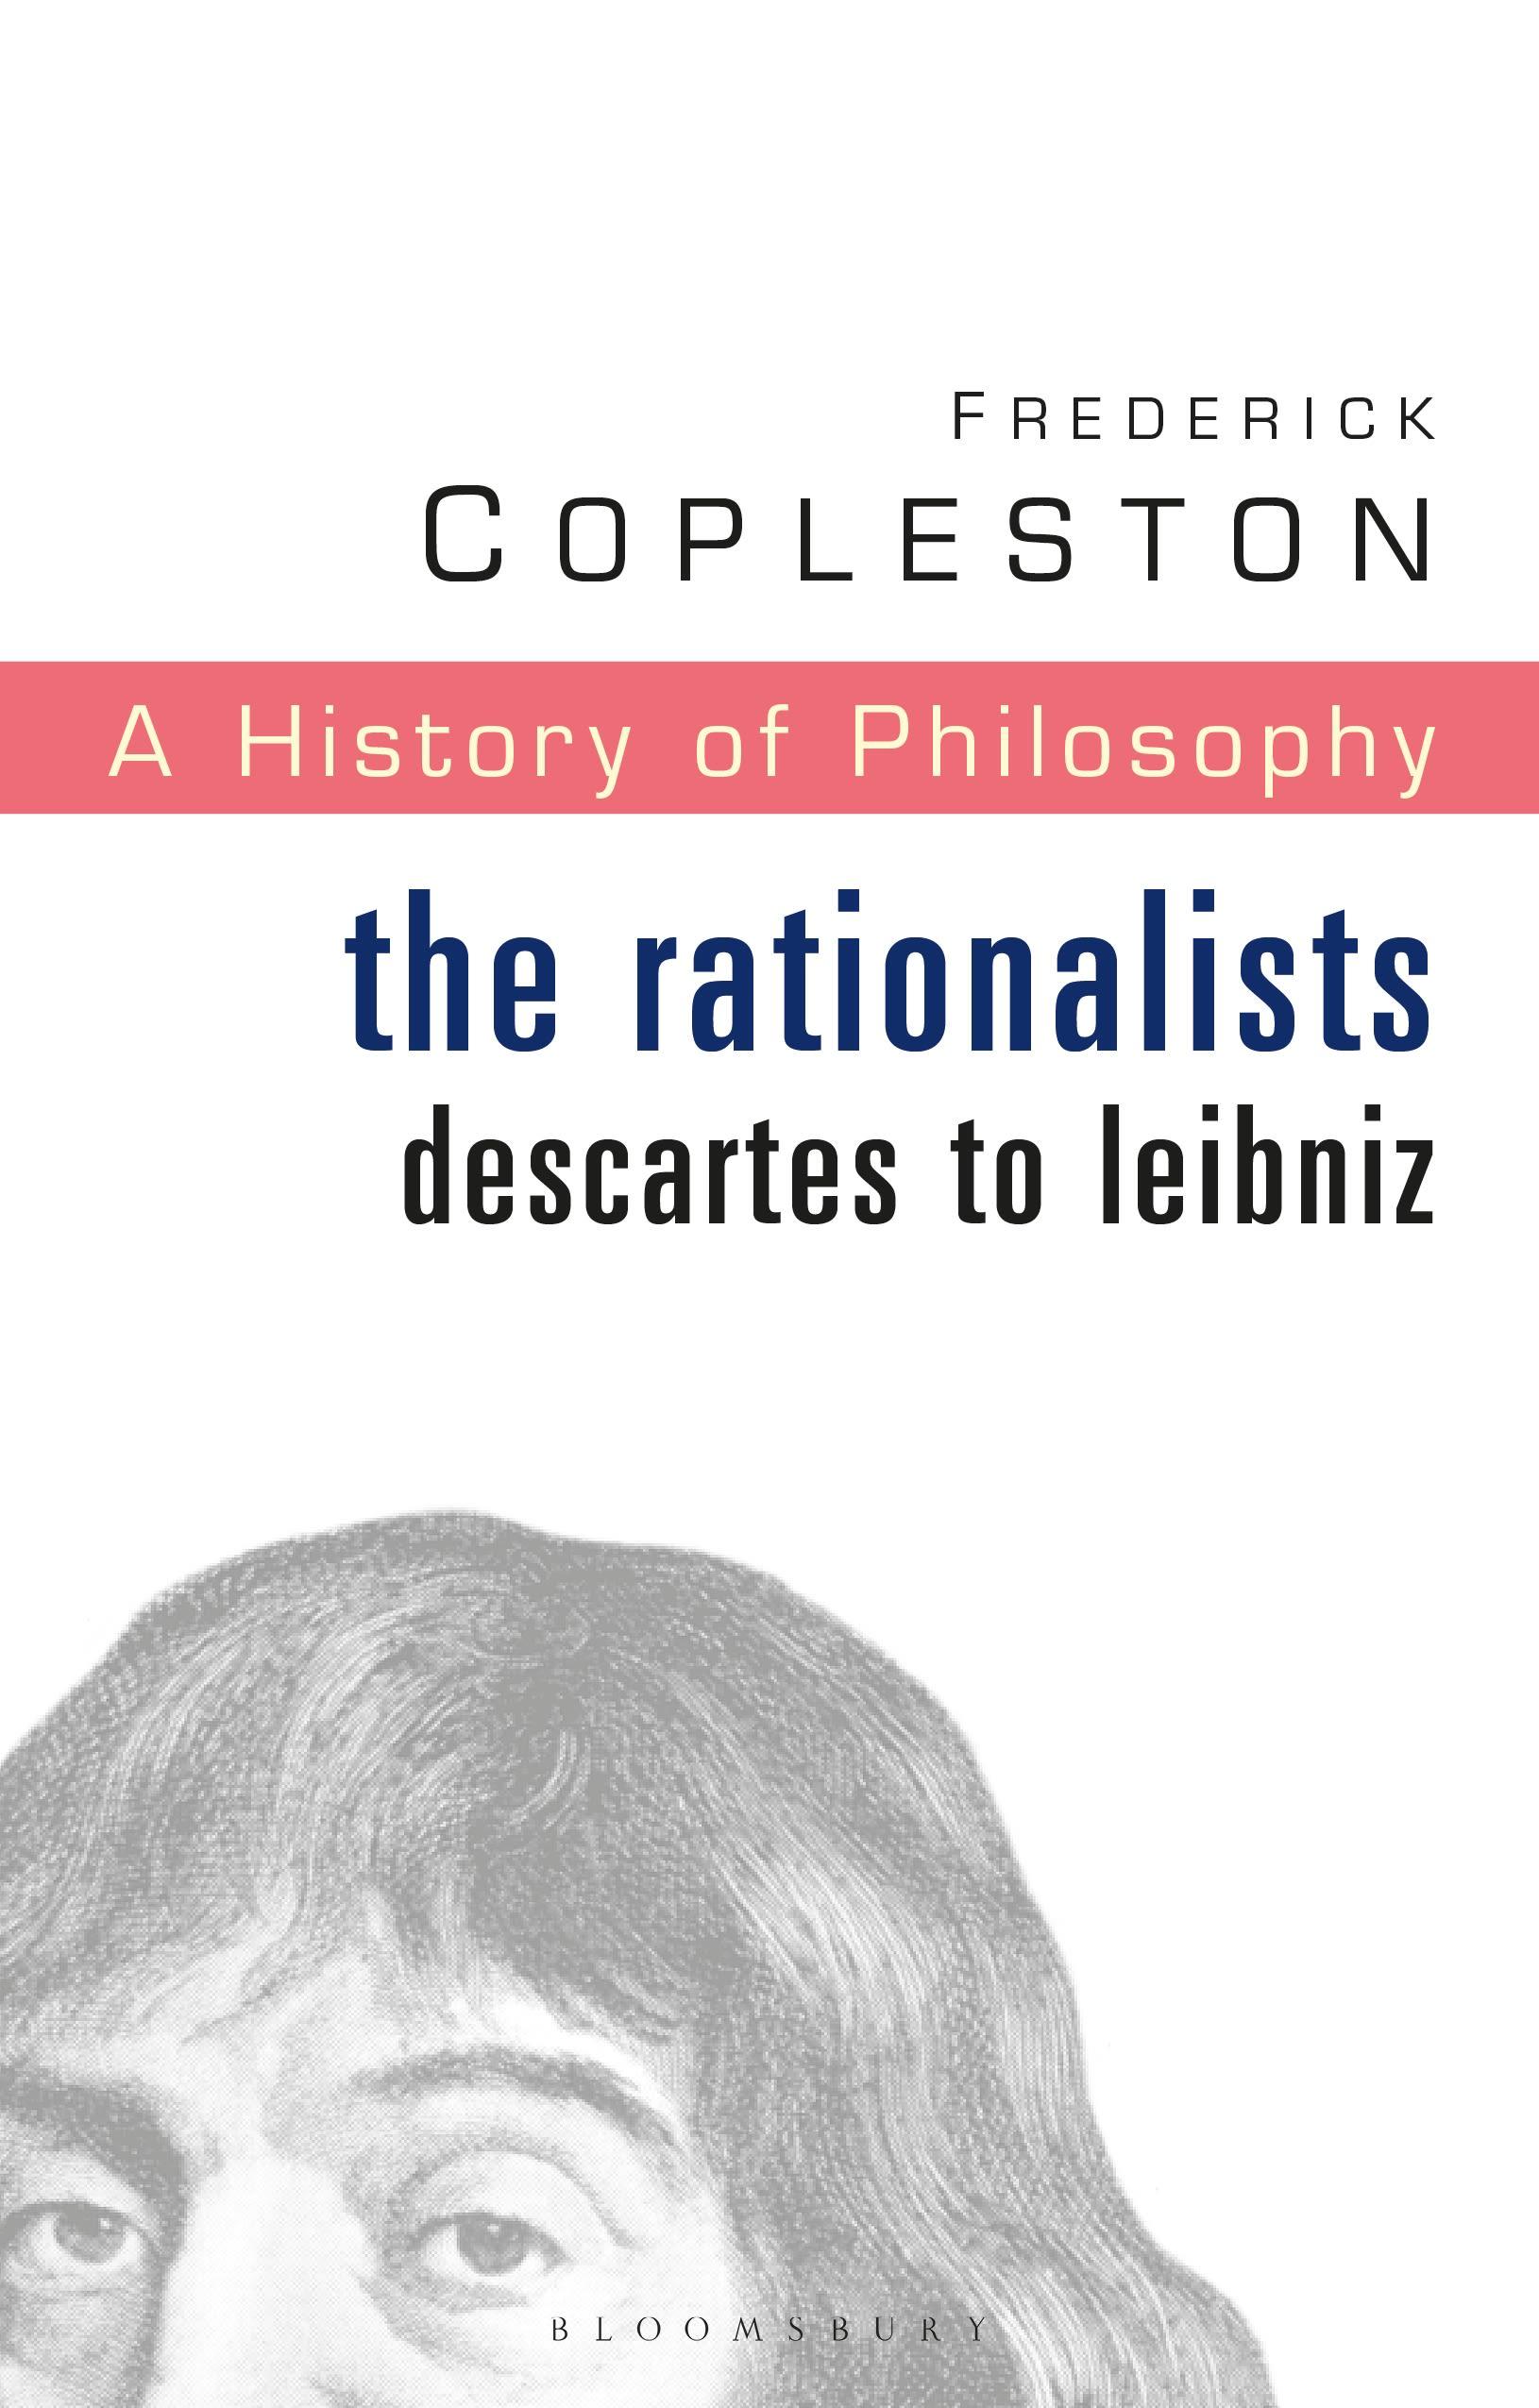 History of Philosophy Volume 4 / The Rationalists: Descartes to Leibniz / Frederick Copleston / Taschenbuch / Kartoniert / Broschiert / Englisch / 2003 / Bloomsbury Publishing PLC / EAN 9780826468987 - Copleston, Frederick